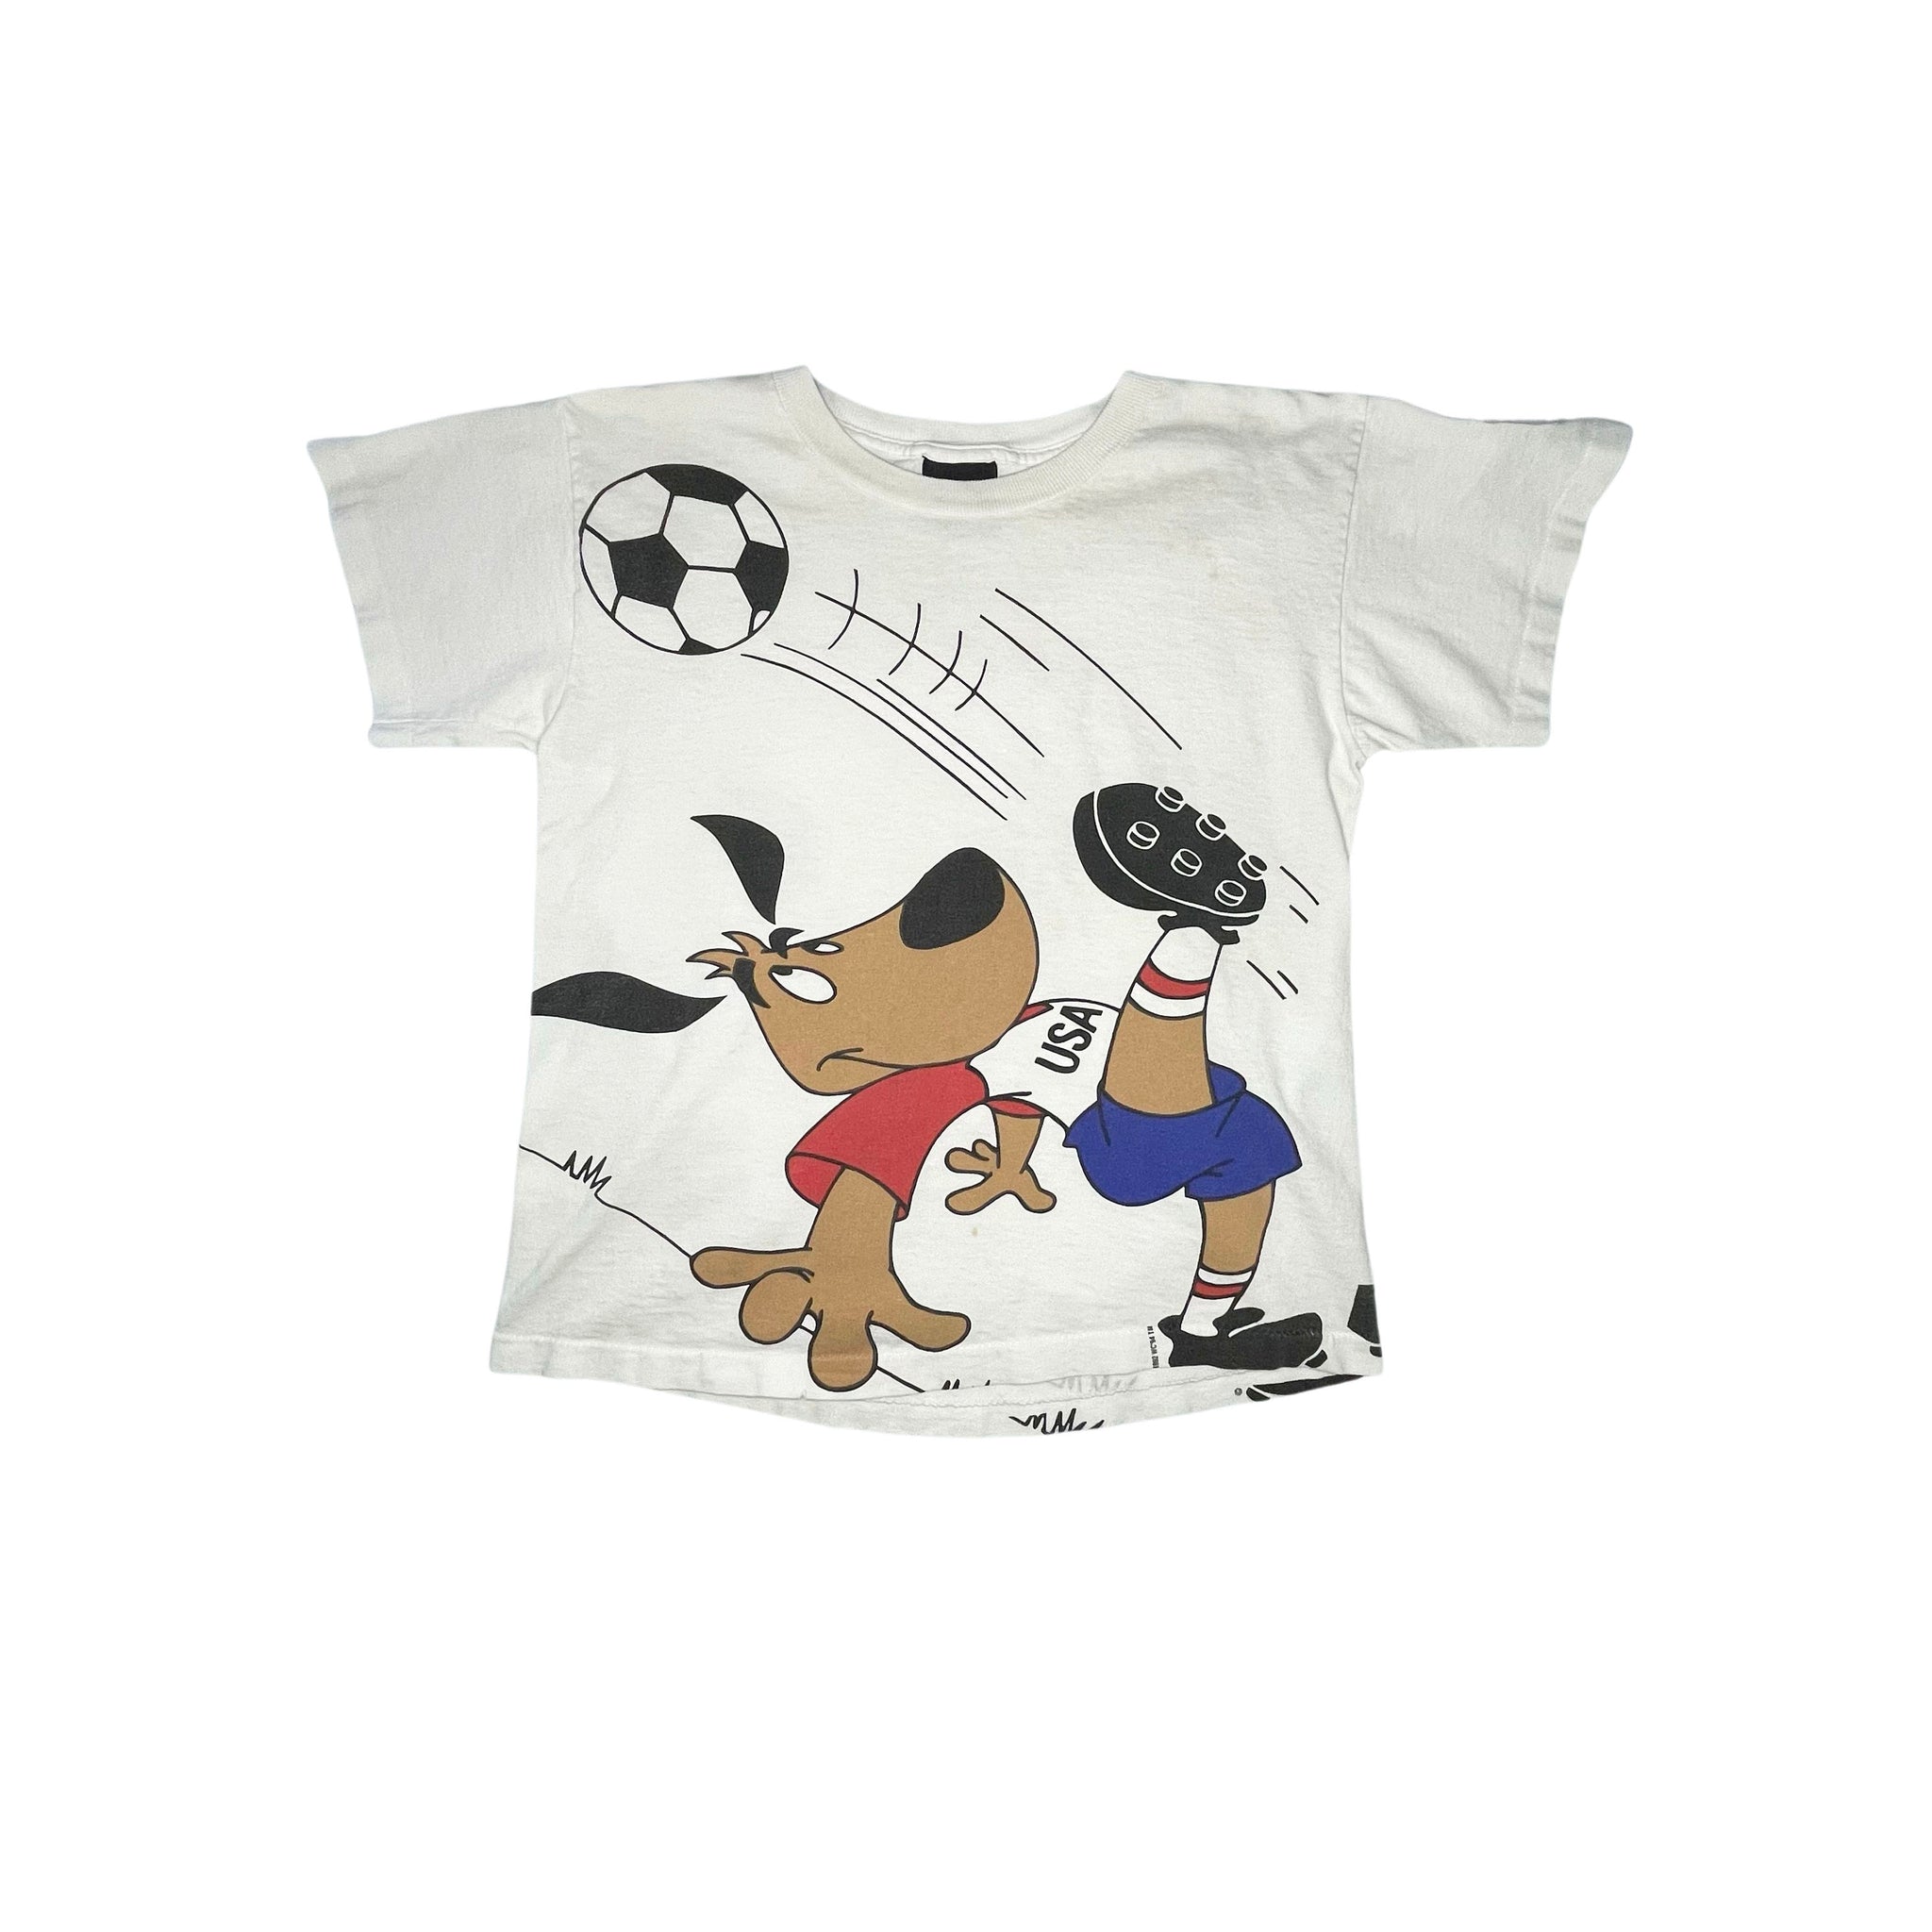 1994 World Cup "Striker" T-Shirt - S